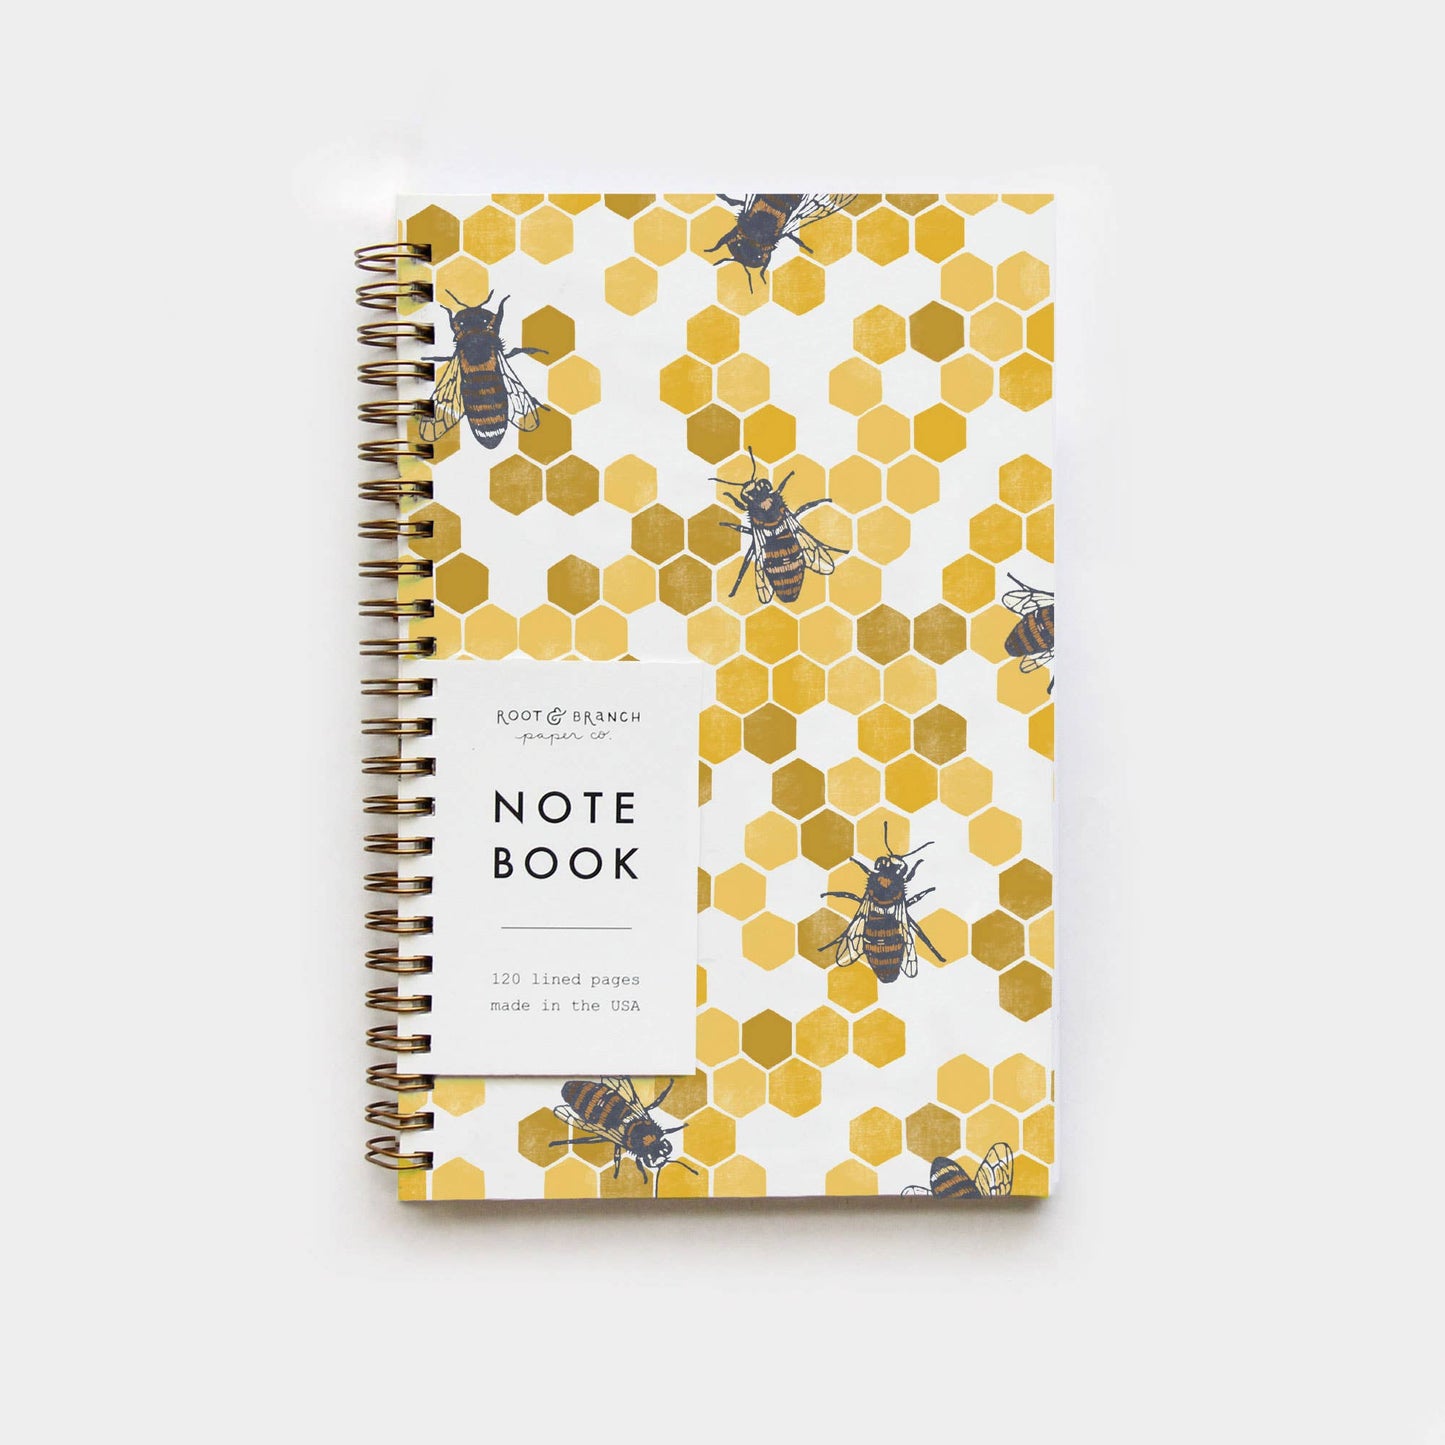 Honeybee Spiral Bound Notebook